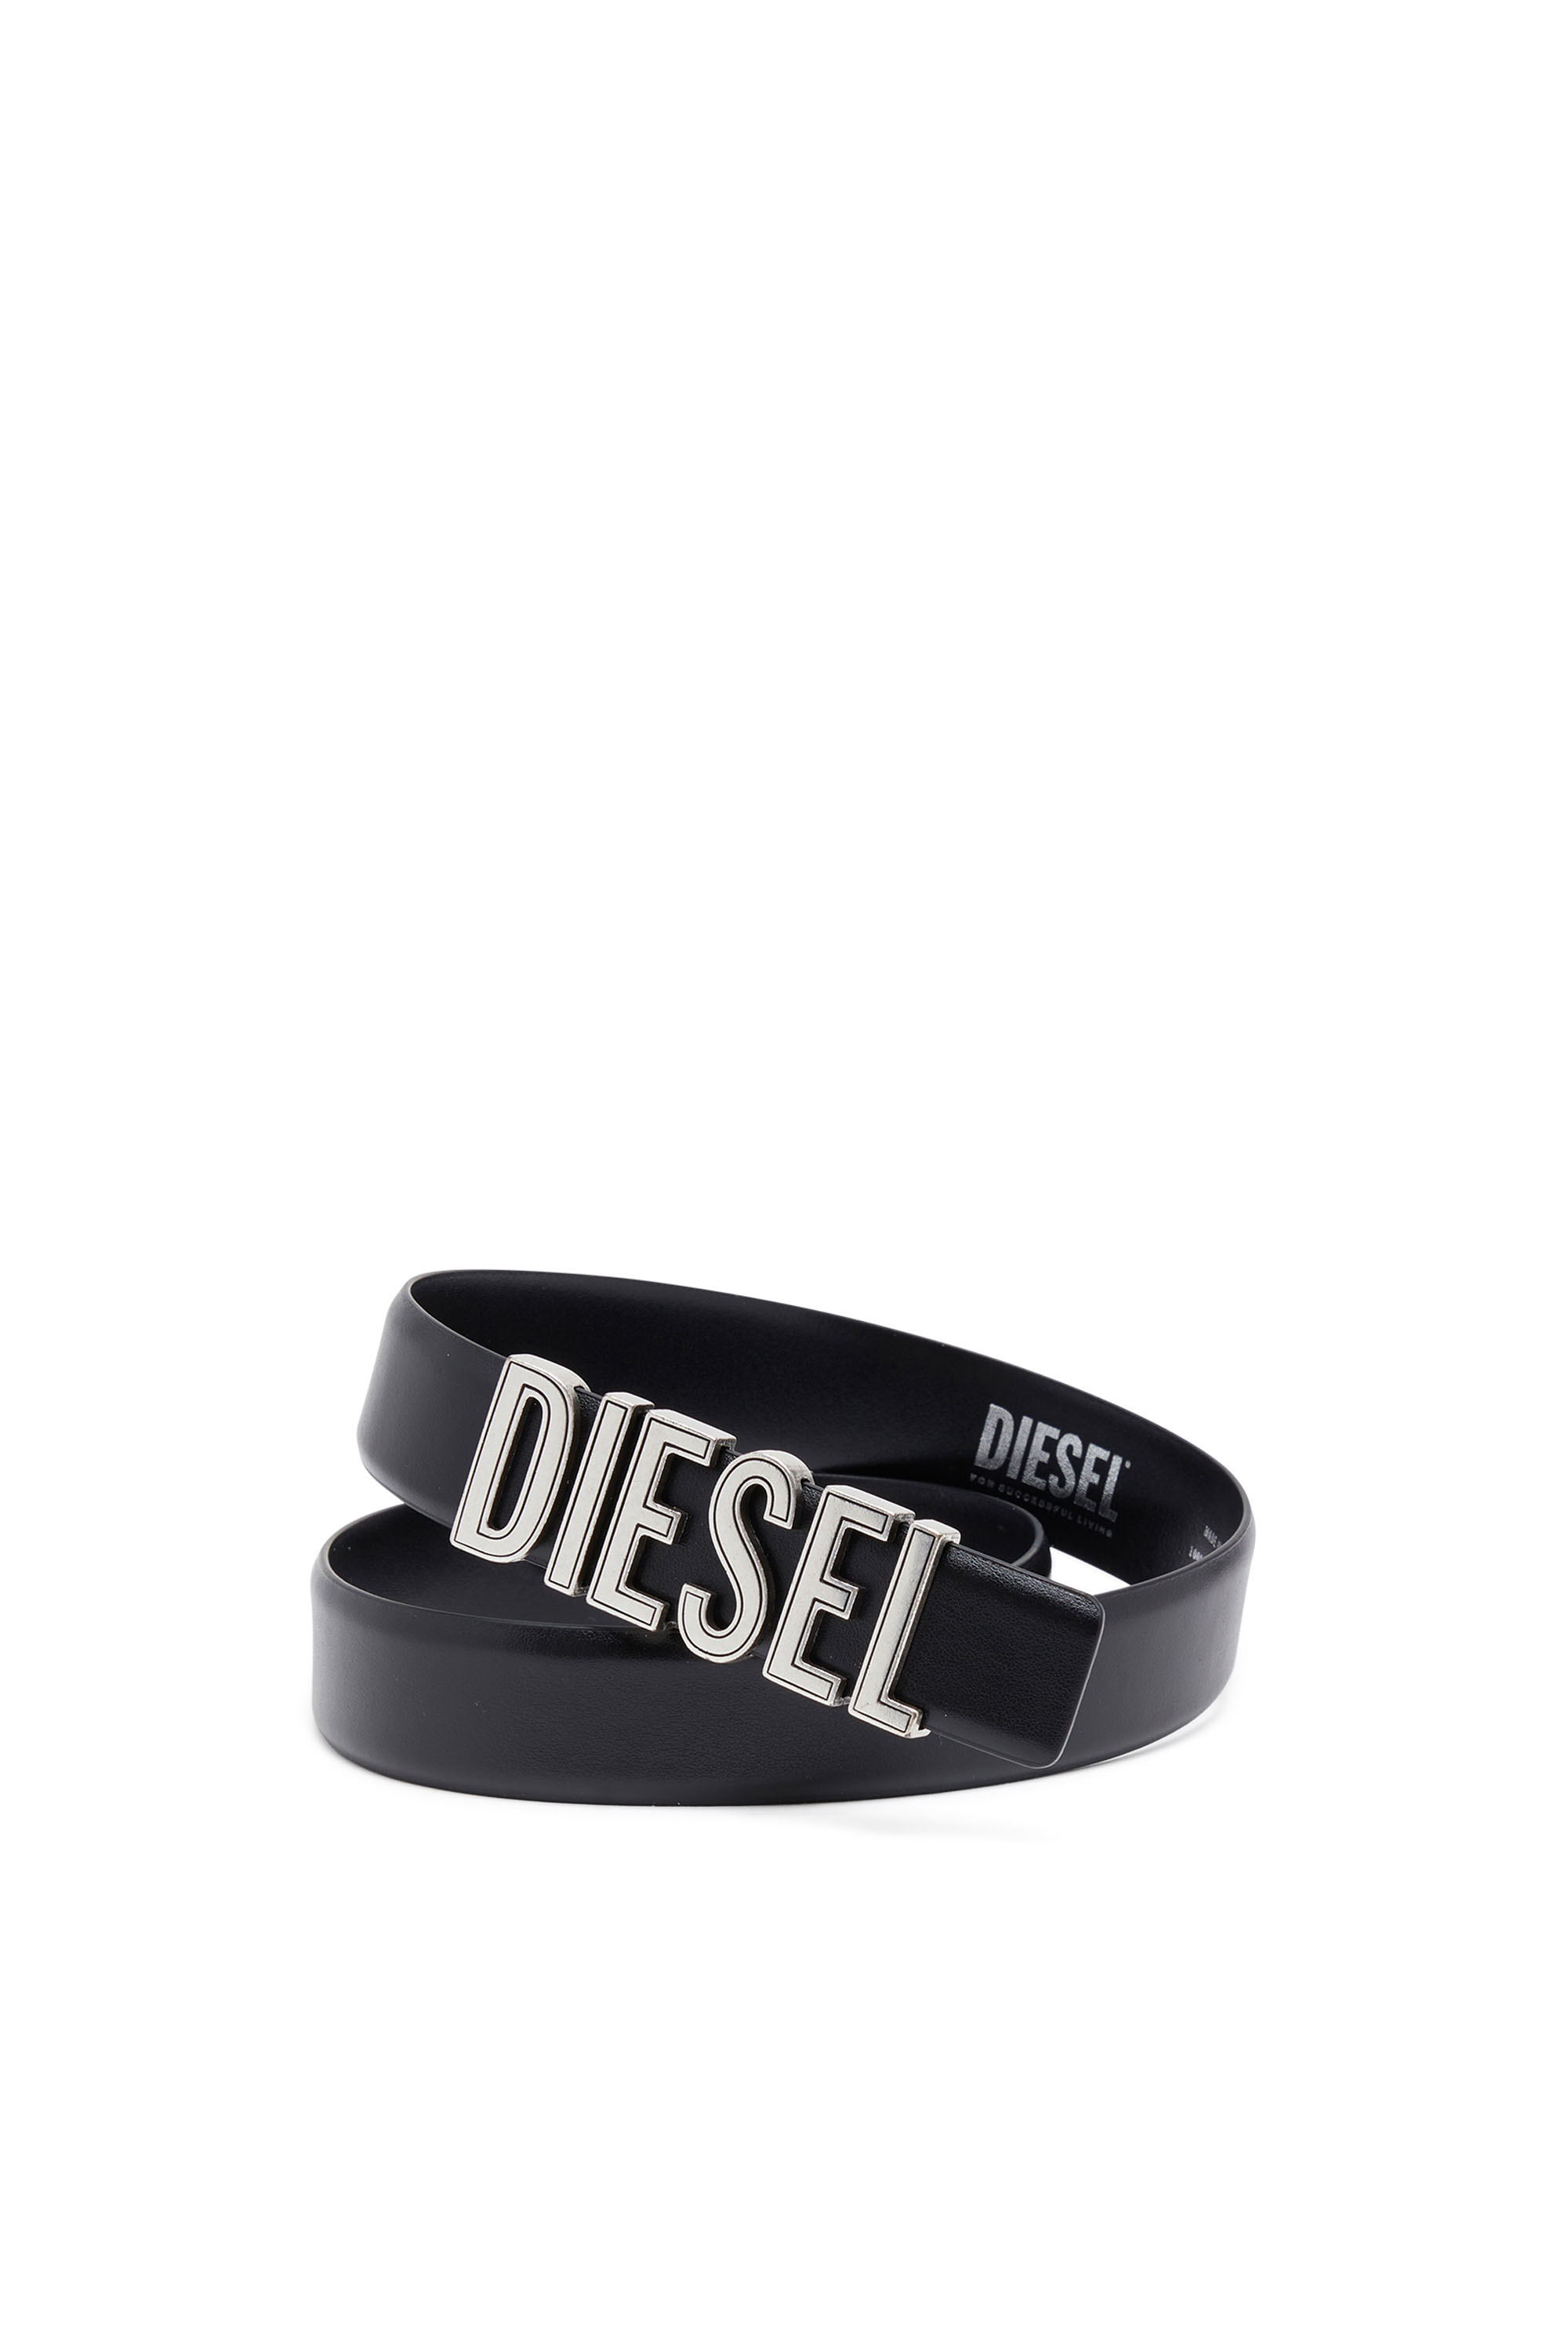 Diesel - B-DIESEL RIVETS, Black - Image 3